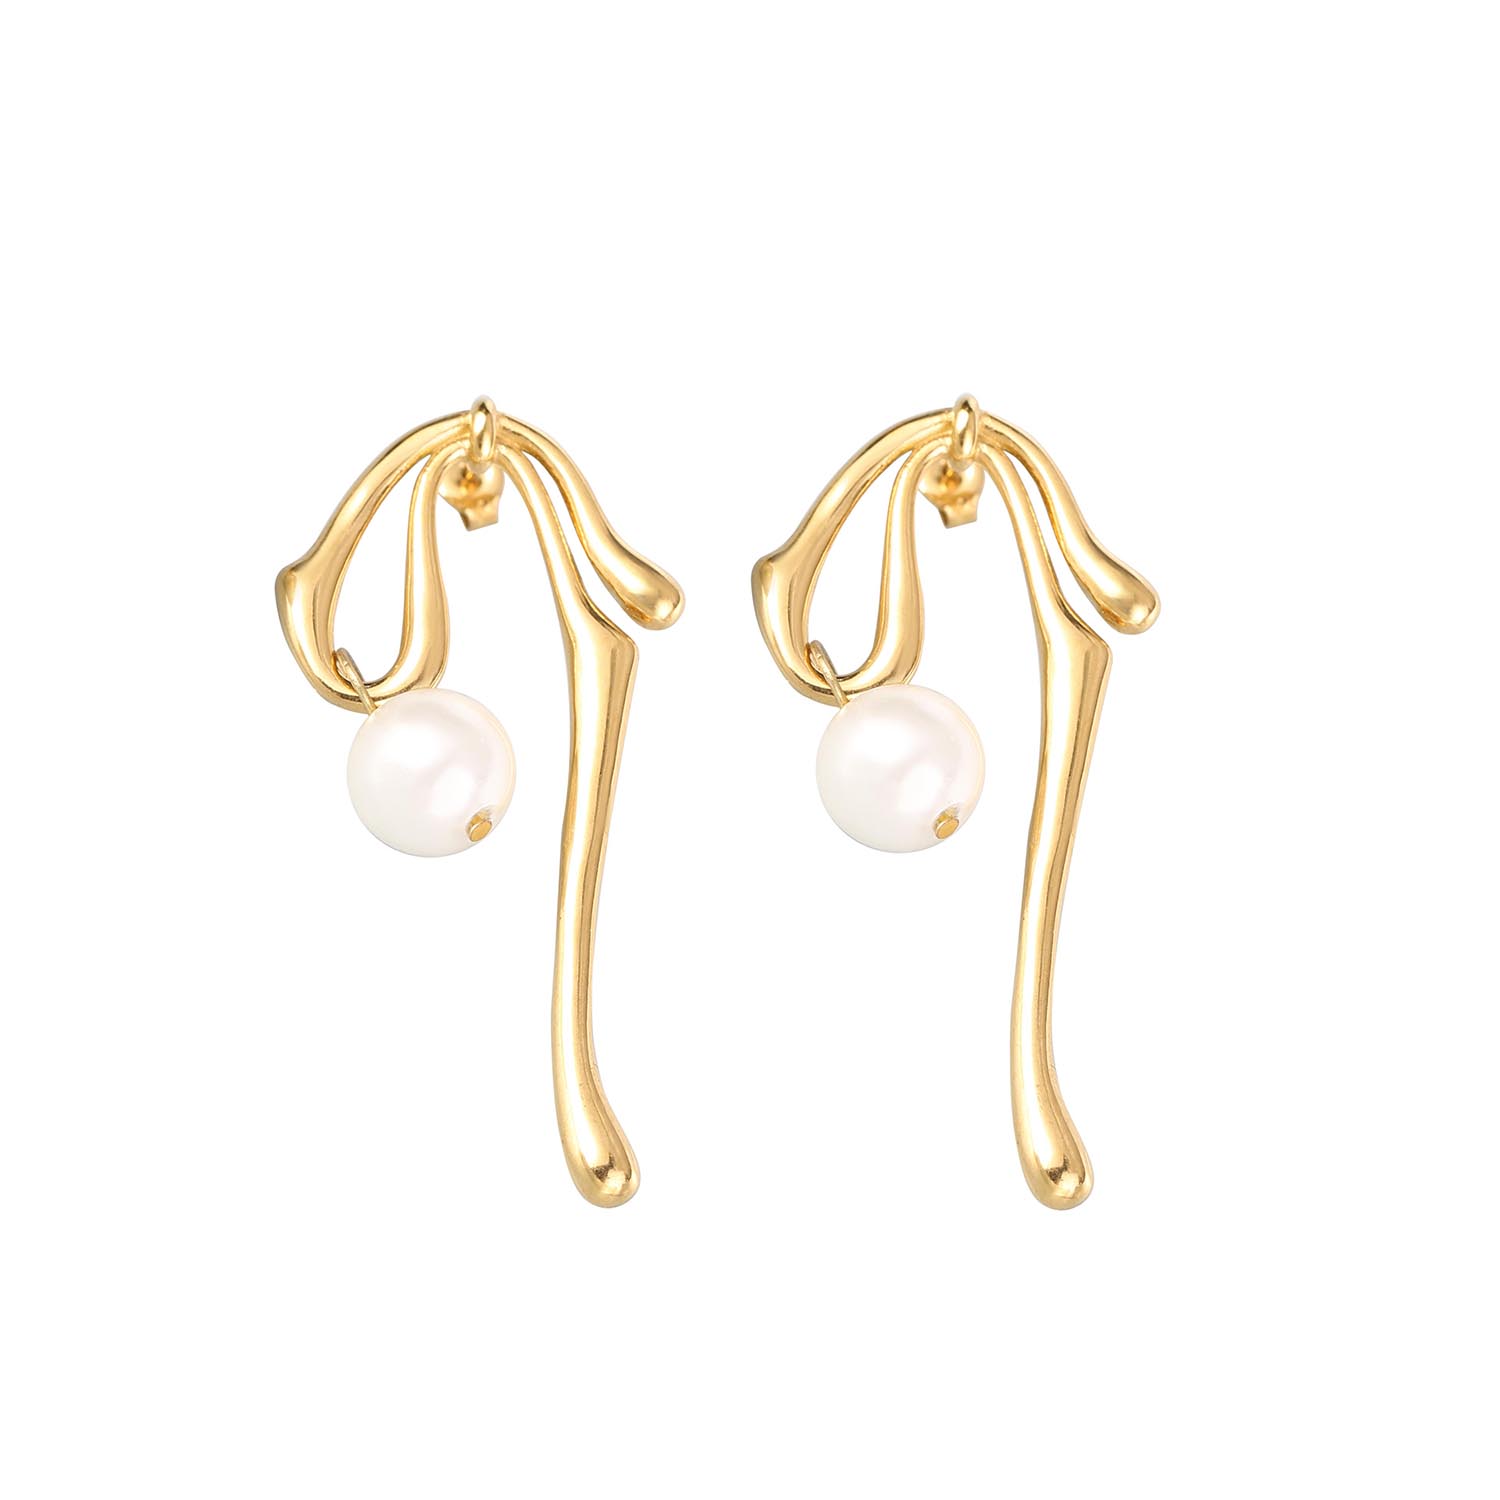 Boucles d'oreilles géométriques en perles, bijoux rétro, personnalité haut de gamme, sensation torsadée irrégulière, en acier inoxydable plaqué or